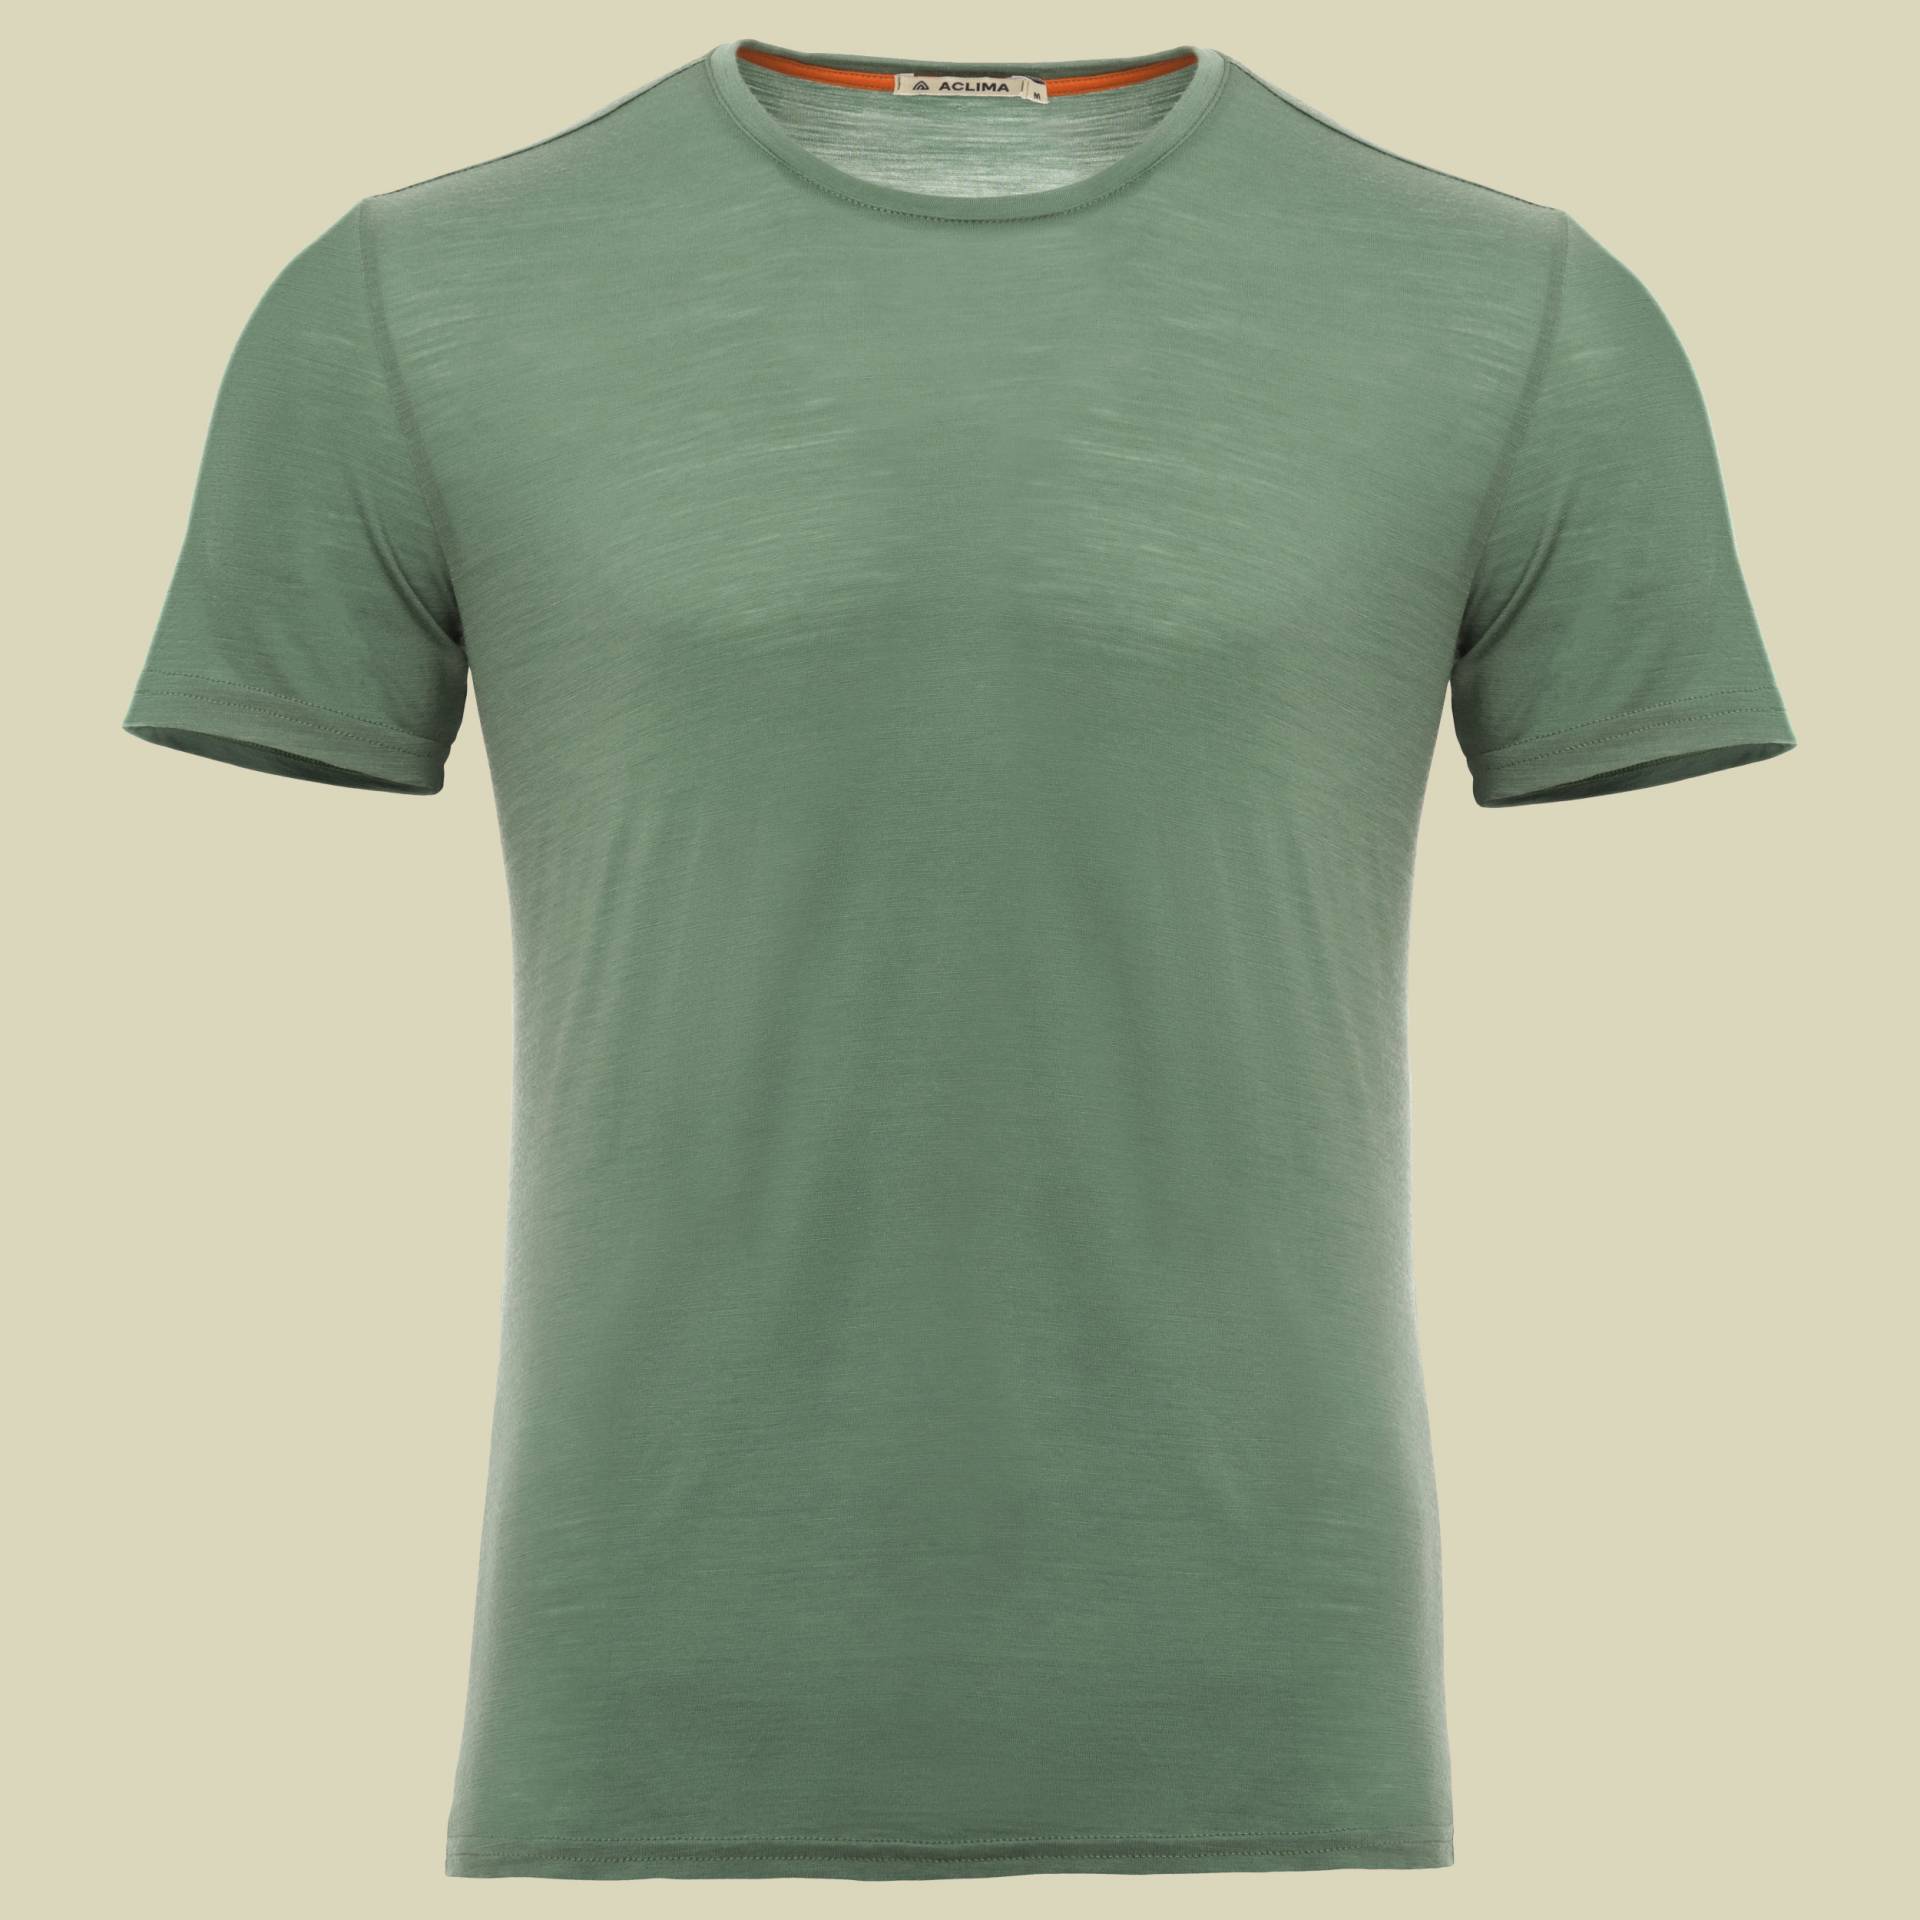 LightWool T-Shirt Men Größe S Farbe dark ivy von aclima